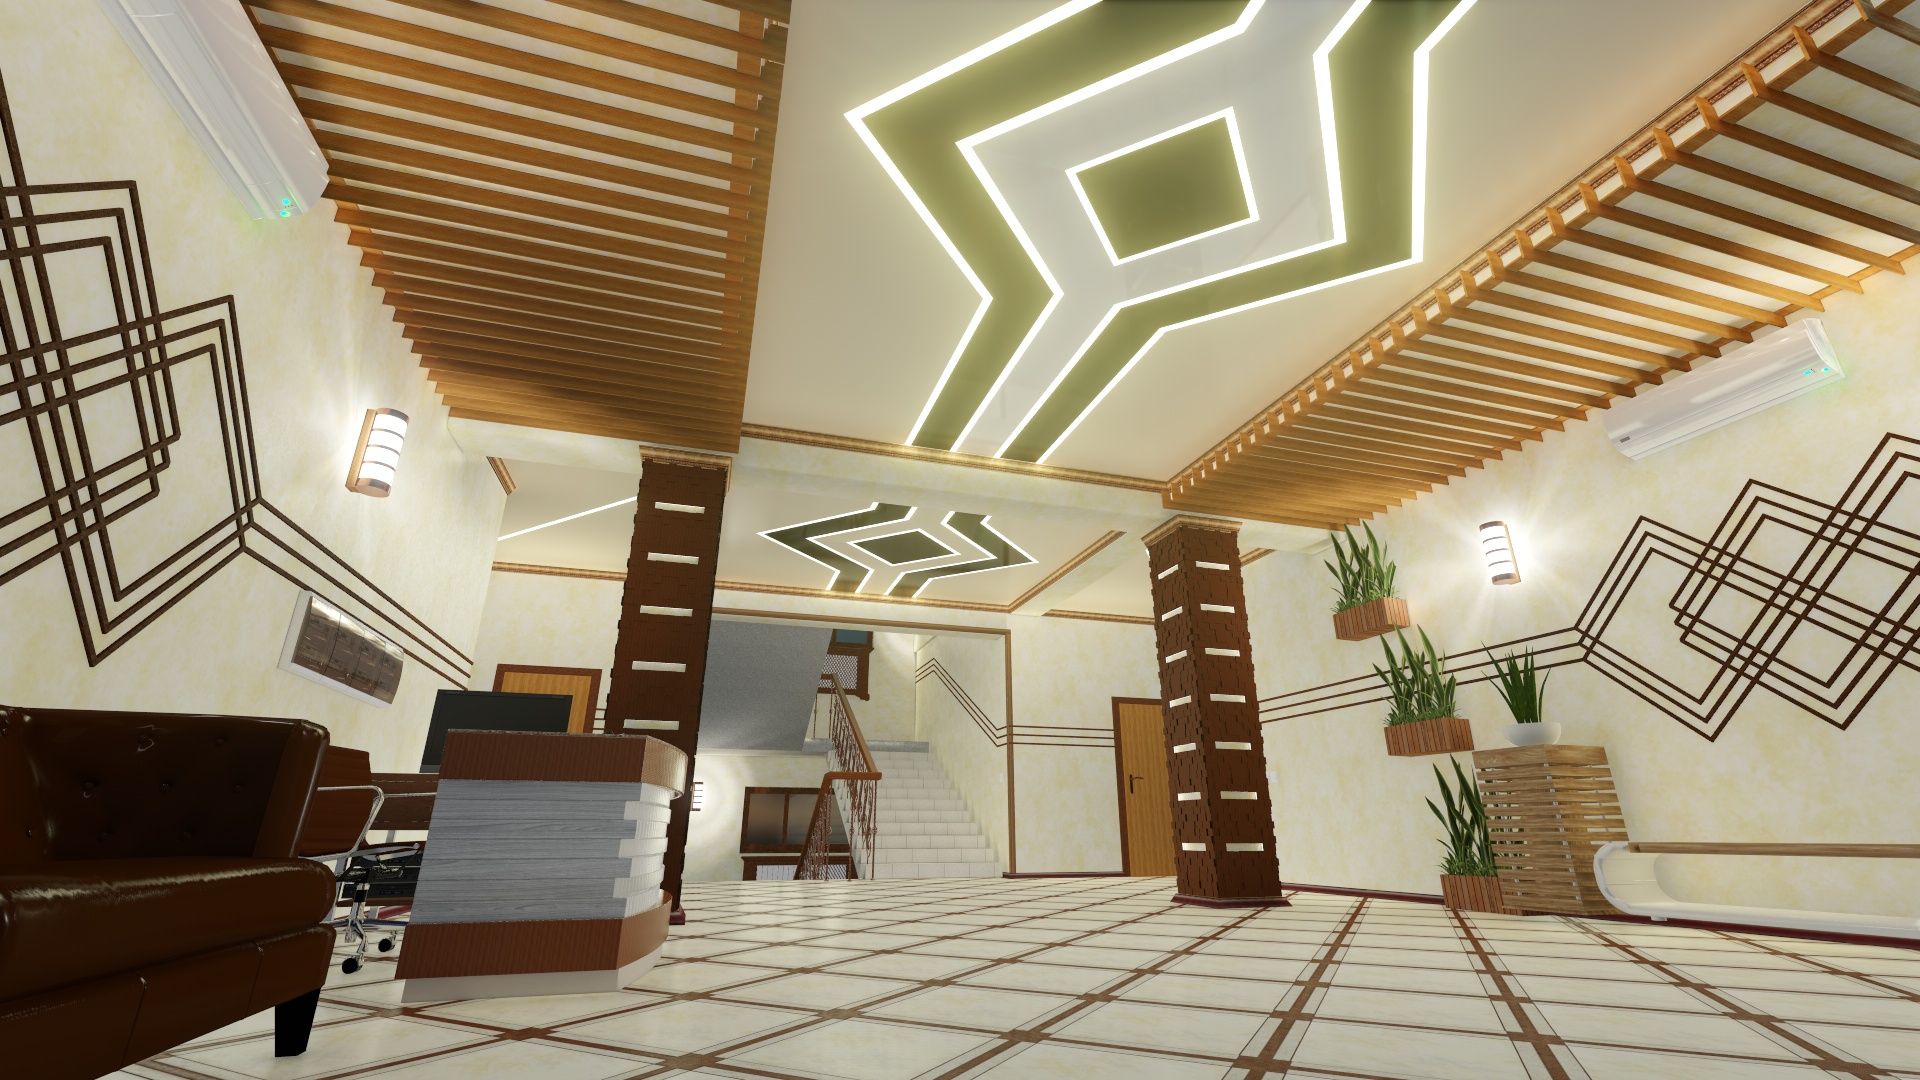 Conceito 3D do salão de entrada e dos corredores de um prédio de escritórios. (Vídeo anexado) em Cinema 4d Other imagem